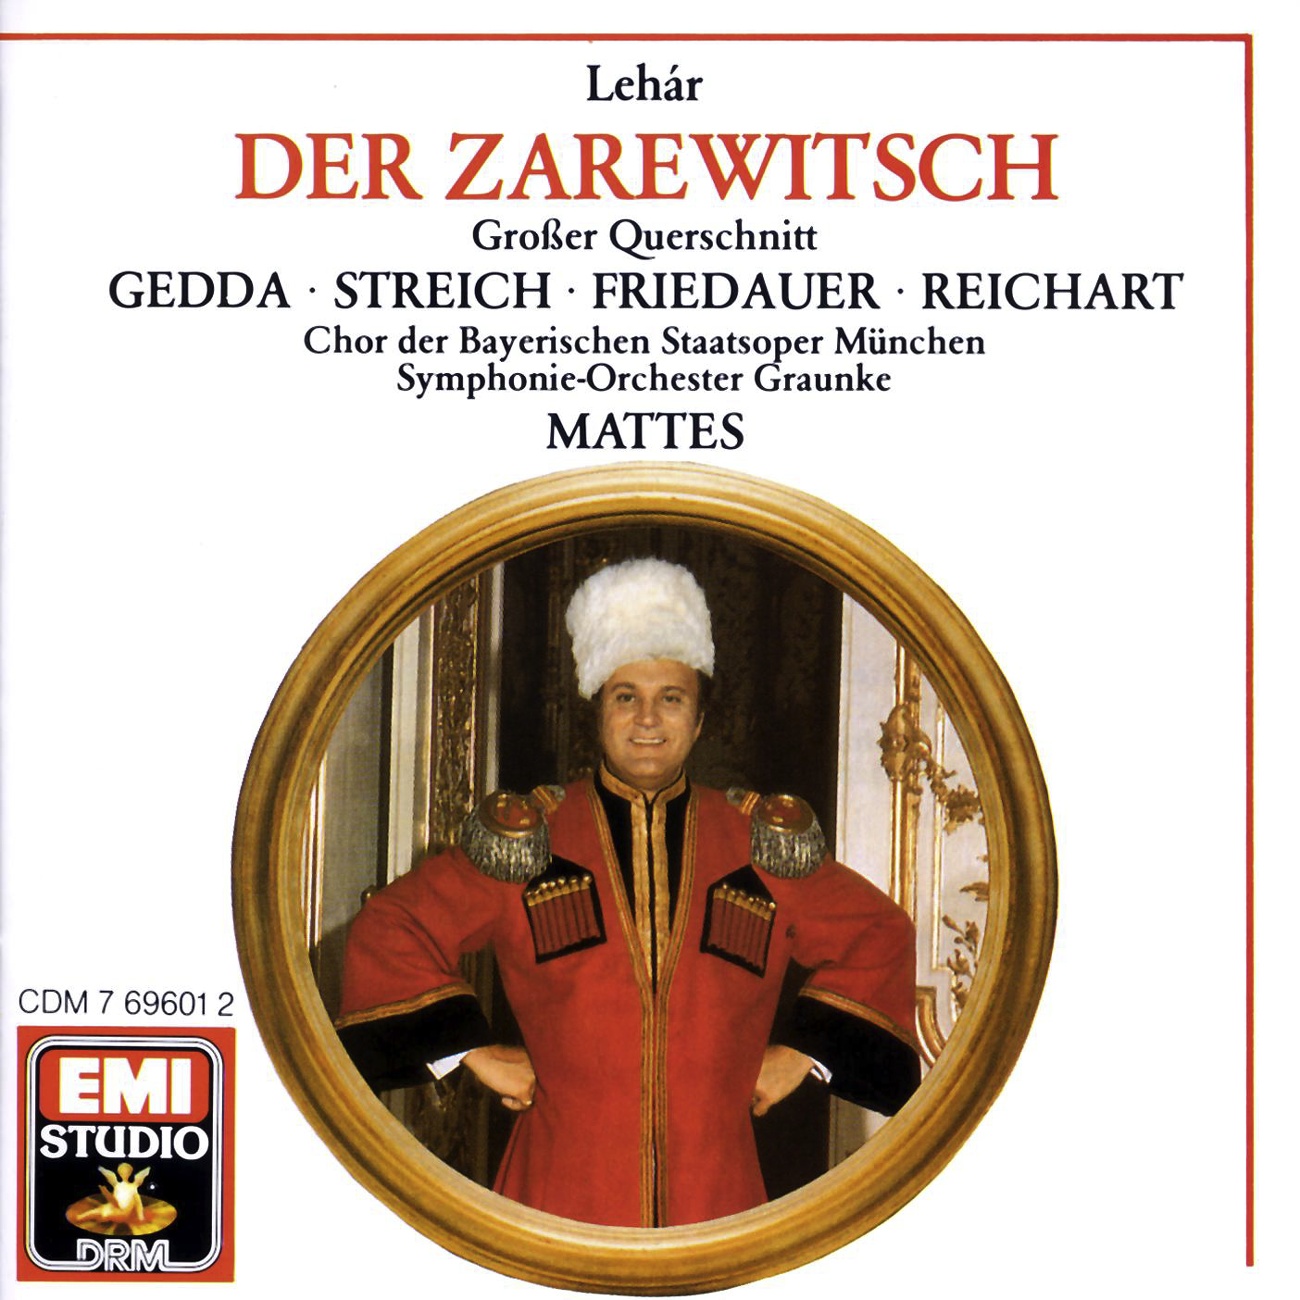 Der Zarewitsch  Highlights 1988 Digital Remaster, Erster Akt: Ein Weib! Du ein Weib!  Champagner ist ein Feuerwein  Es steh